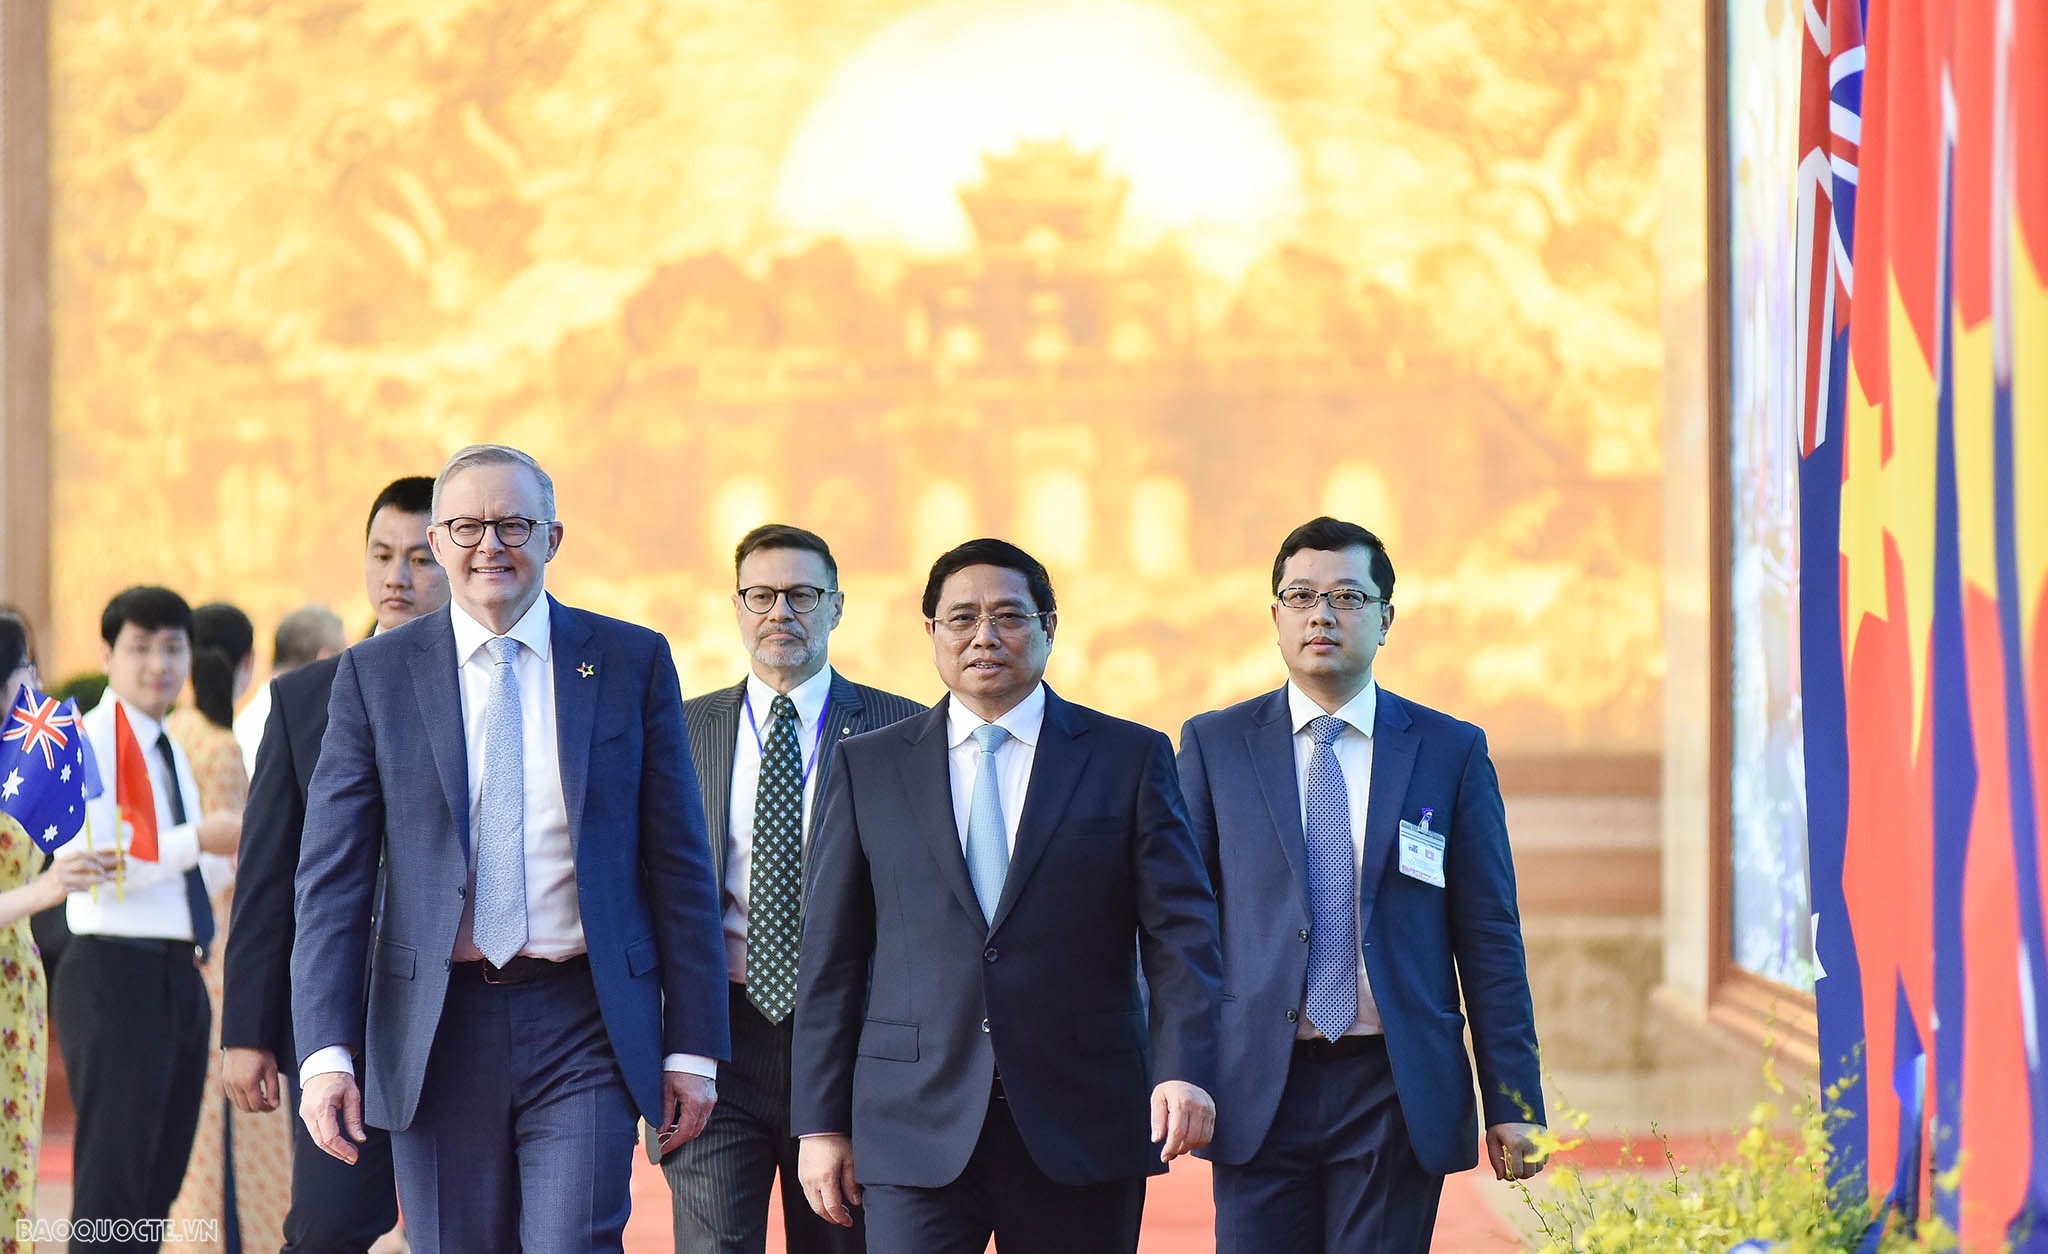 Thủ tướng Australia công bố khoản hỗ trợ 105 triệu AUD cho Việt Nam